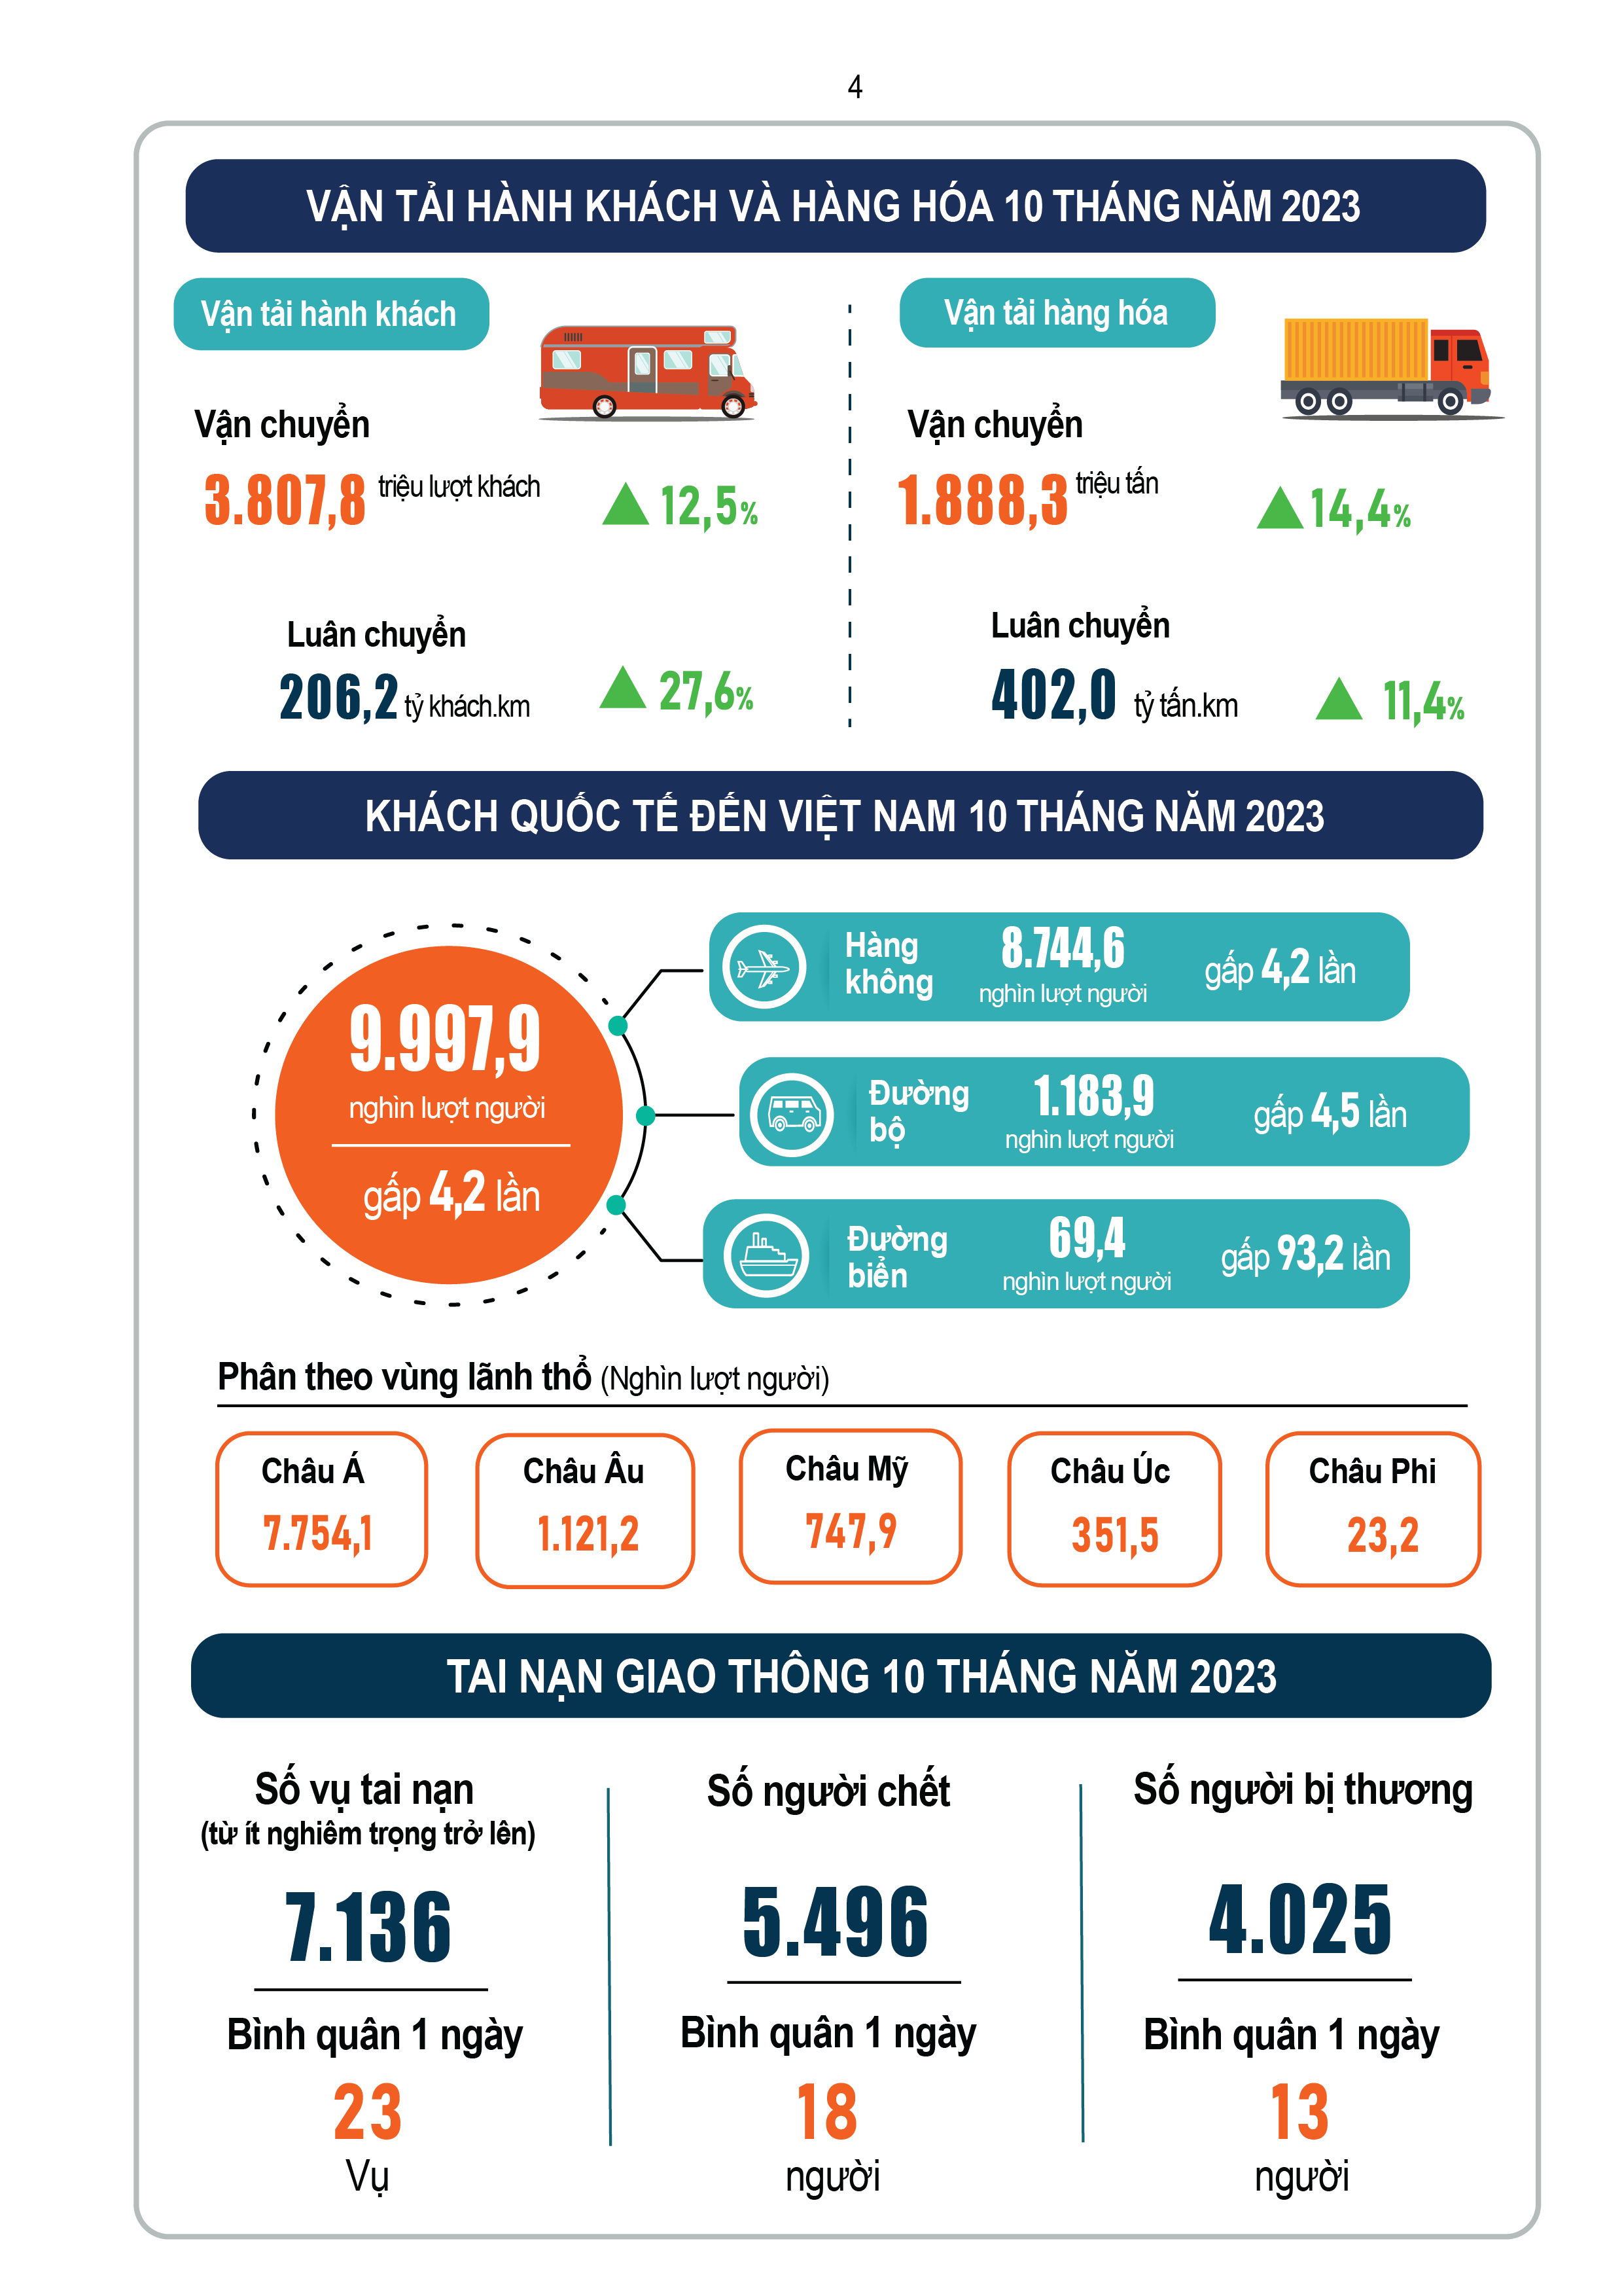 Infographic tình hình kinh tế - xã hội tháng 10 và 10 tháng năm 2023 - Viet Nam Smart City